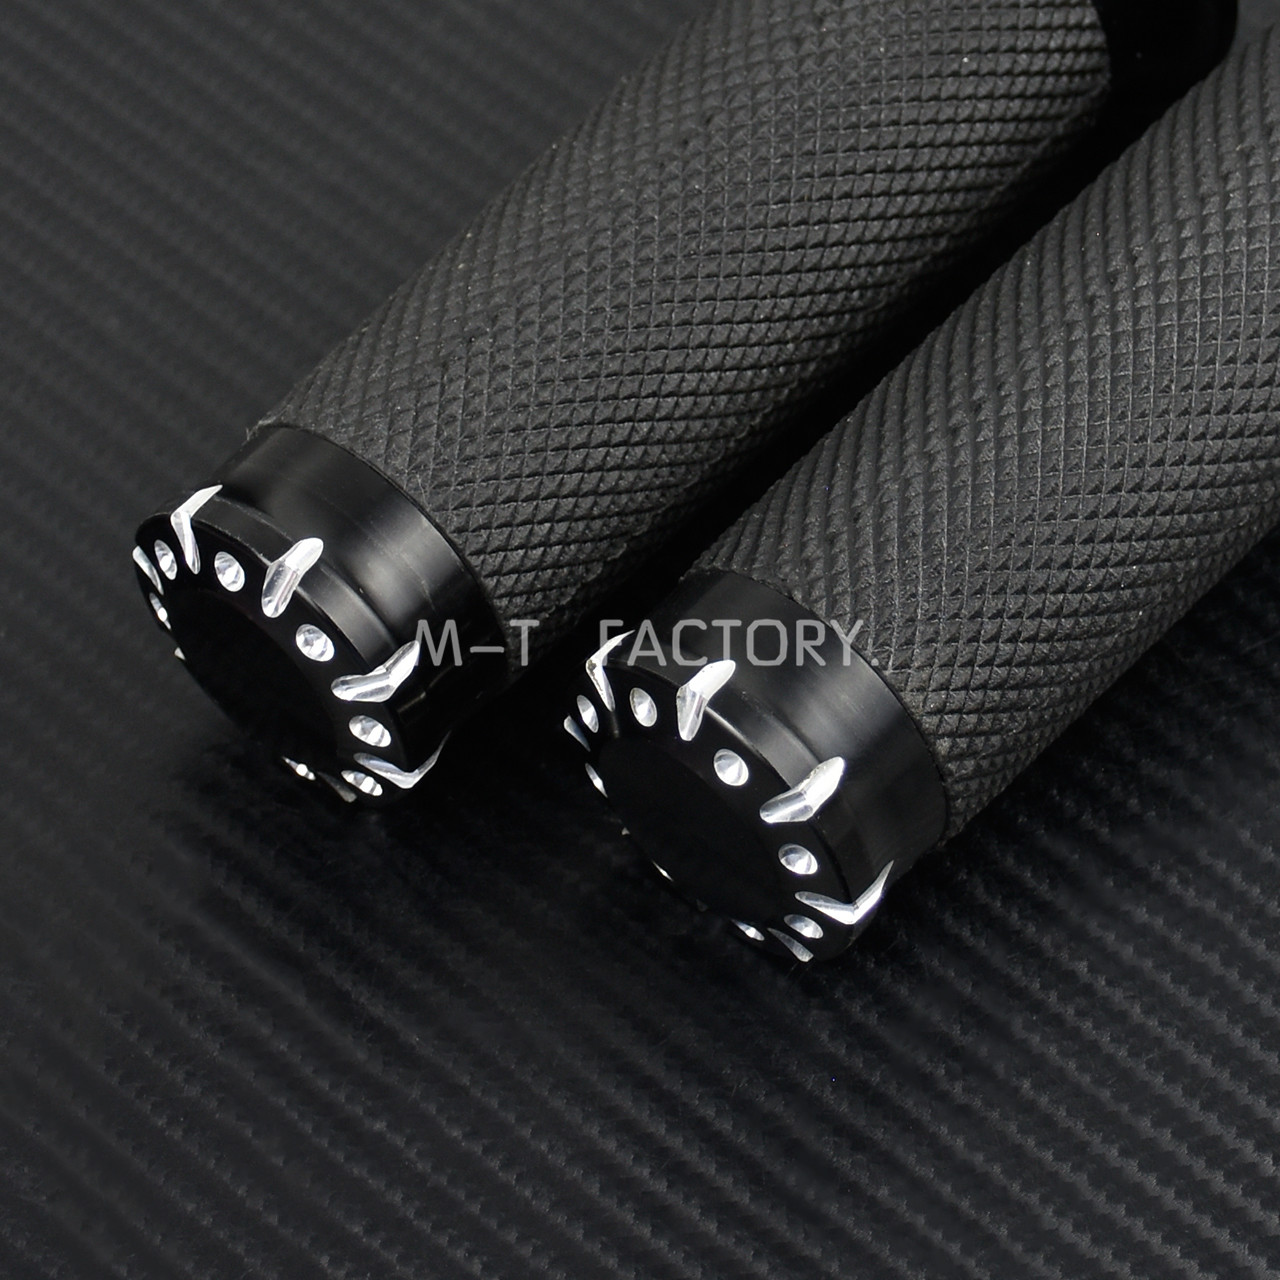 1Pair Black CNC Aluminum 1" Handlebar Hand Grips For Harley Touring Sportster Dyna Softail VRSC